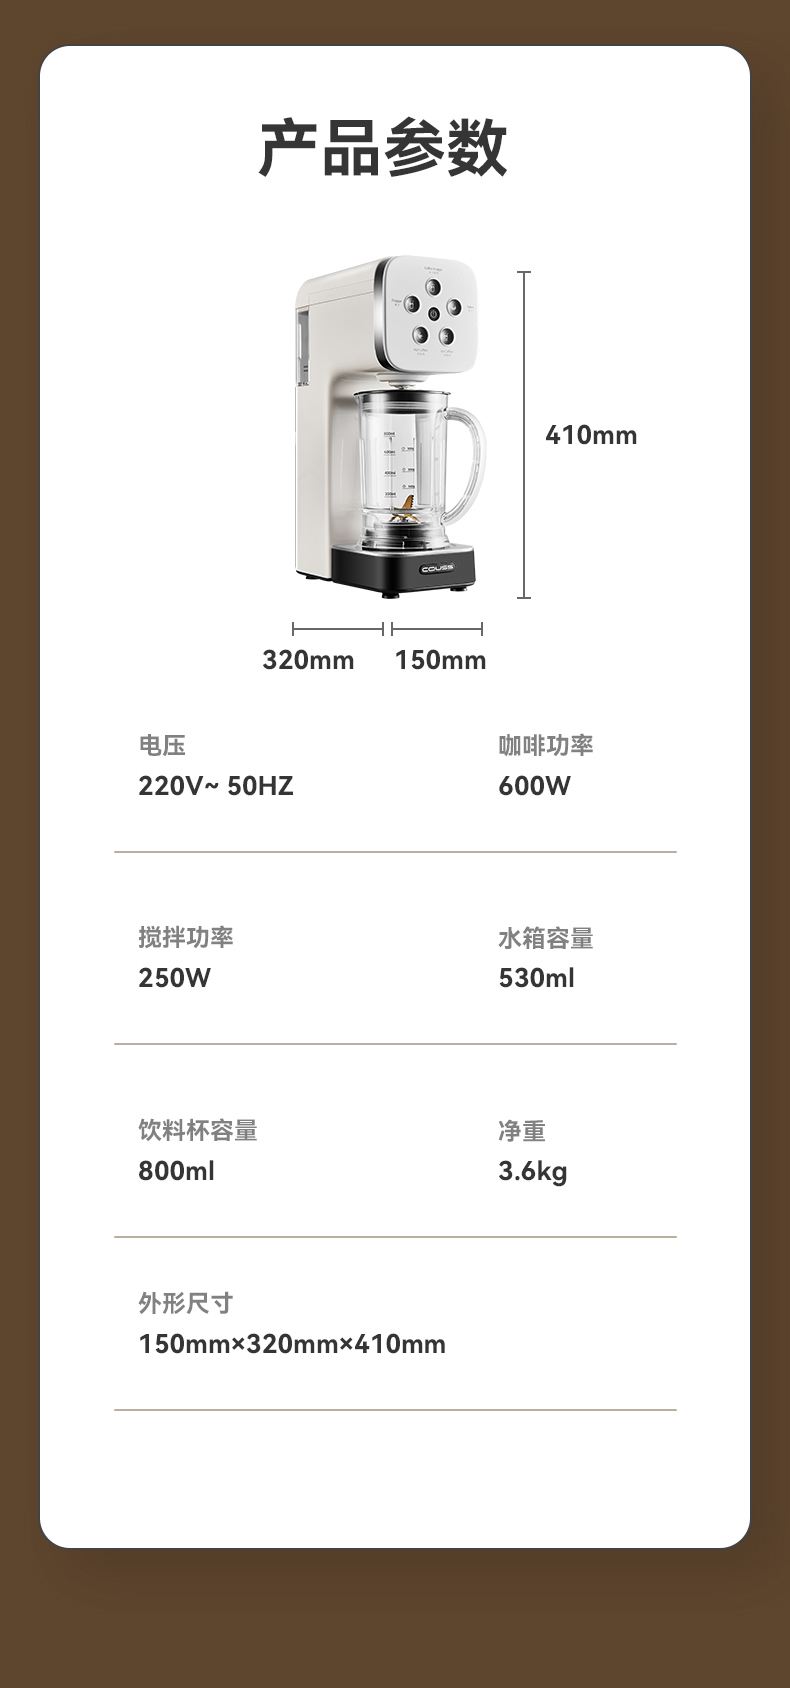 冰沙咖啡机CC508-2_10.jpg